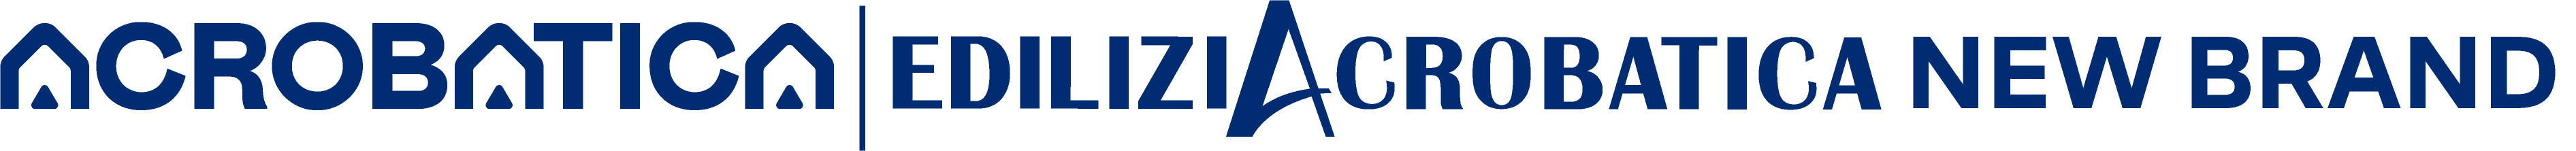 logo-alternative